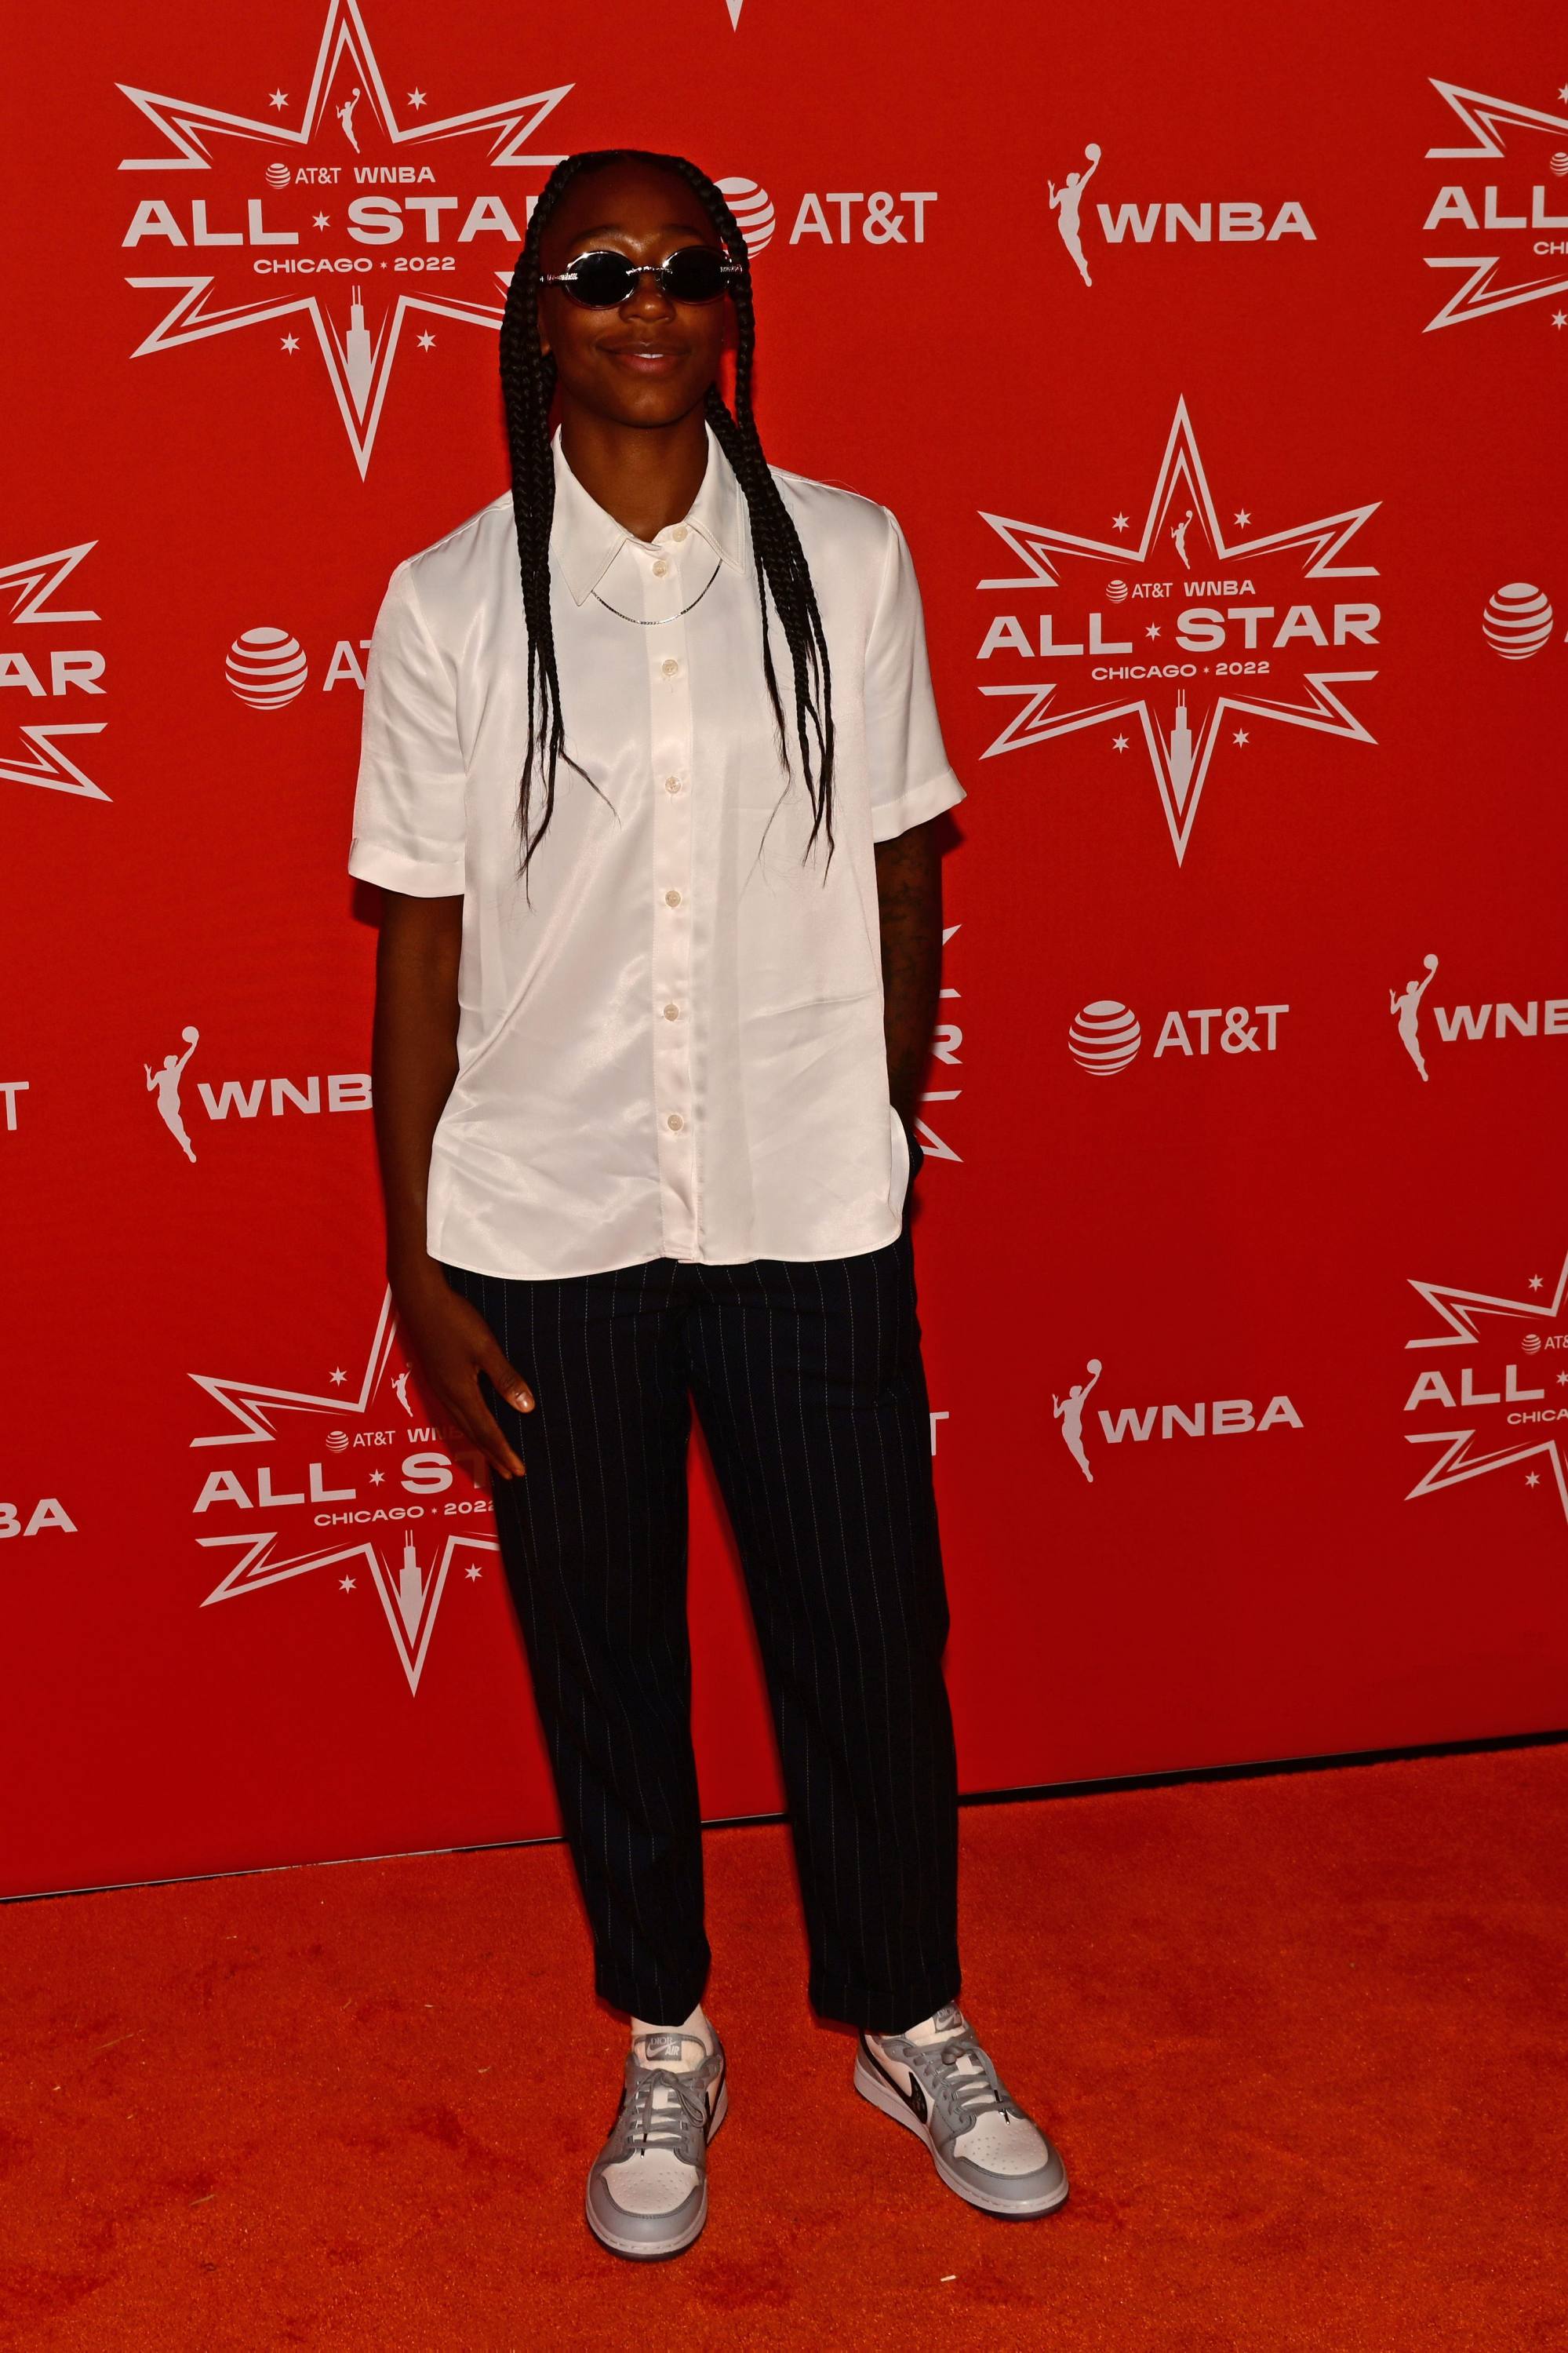 Slic Media - Which new WNBA uniform do you like best? 🗣🏀